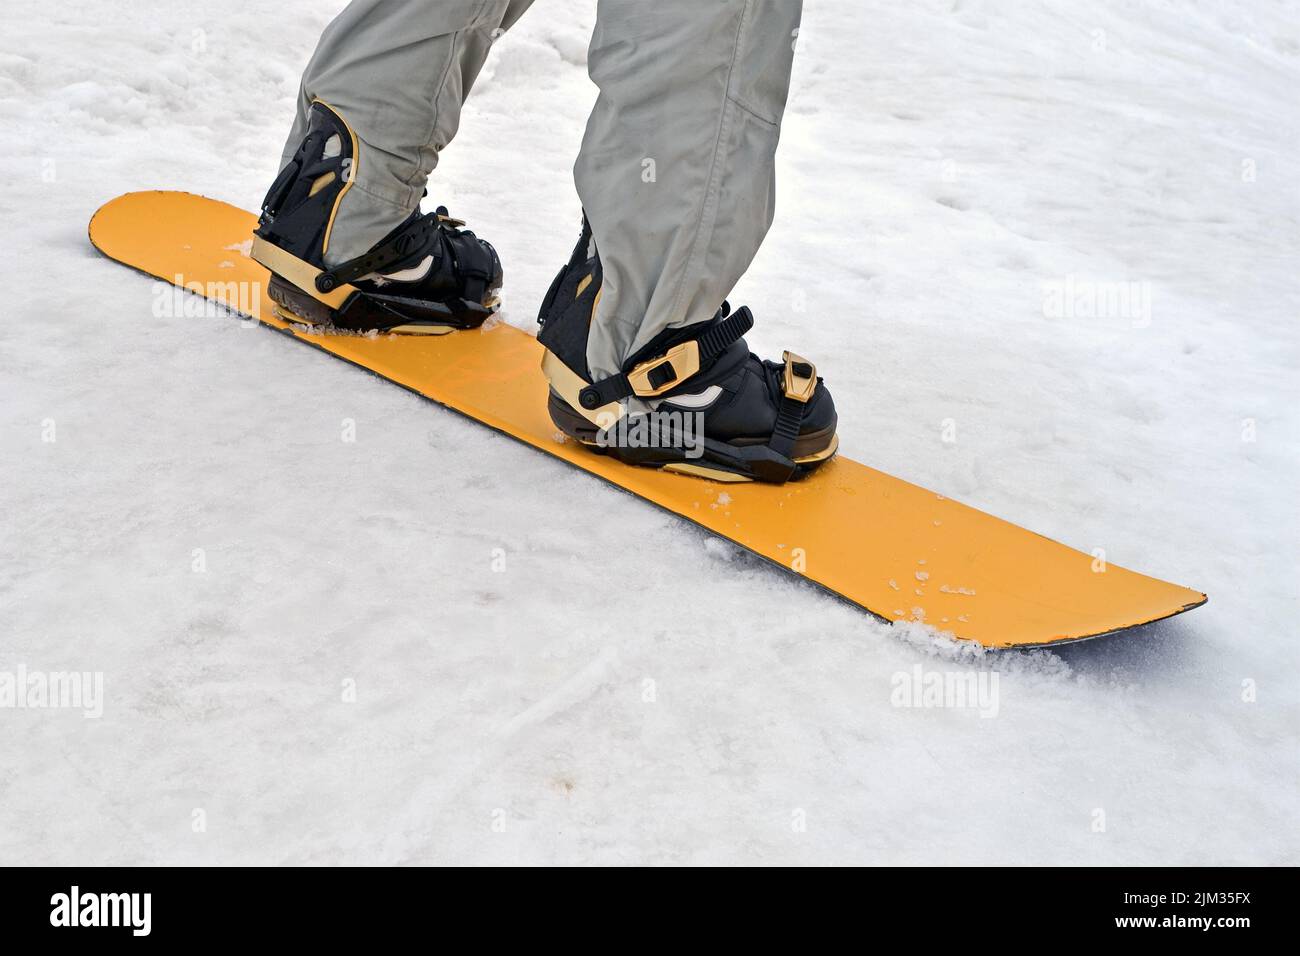 Sportler mit gelbem Snowboard Nahaufnahme auf weißem Schnee, saisonale  cnjwboard Sport Unterhaltung Vielfalt Stockfotografie - Alamy